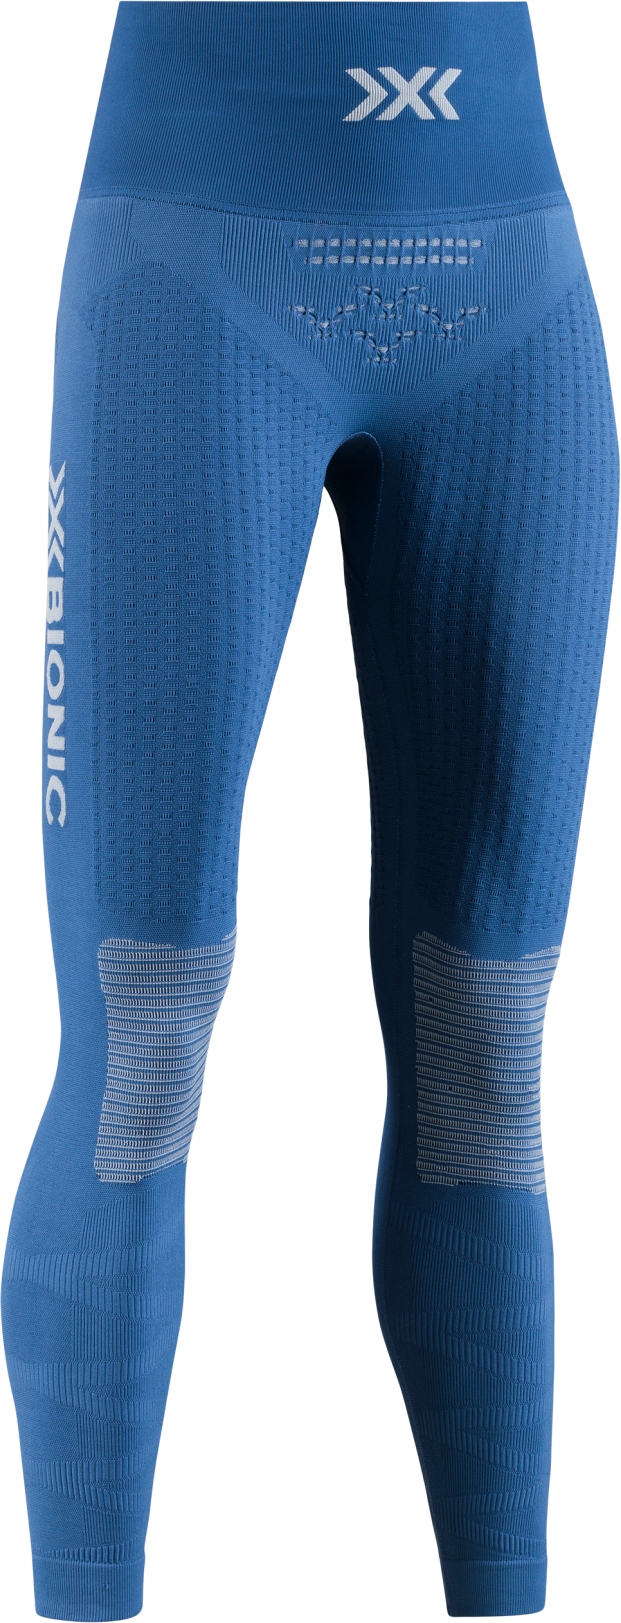 X-Bionic Energizer 4.0 7/8 Fitness Pants Women - jeans blue/pearl beige